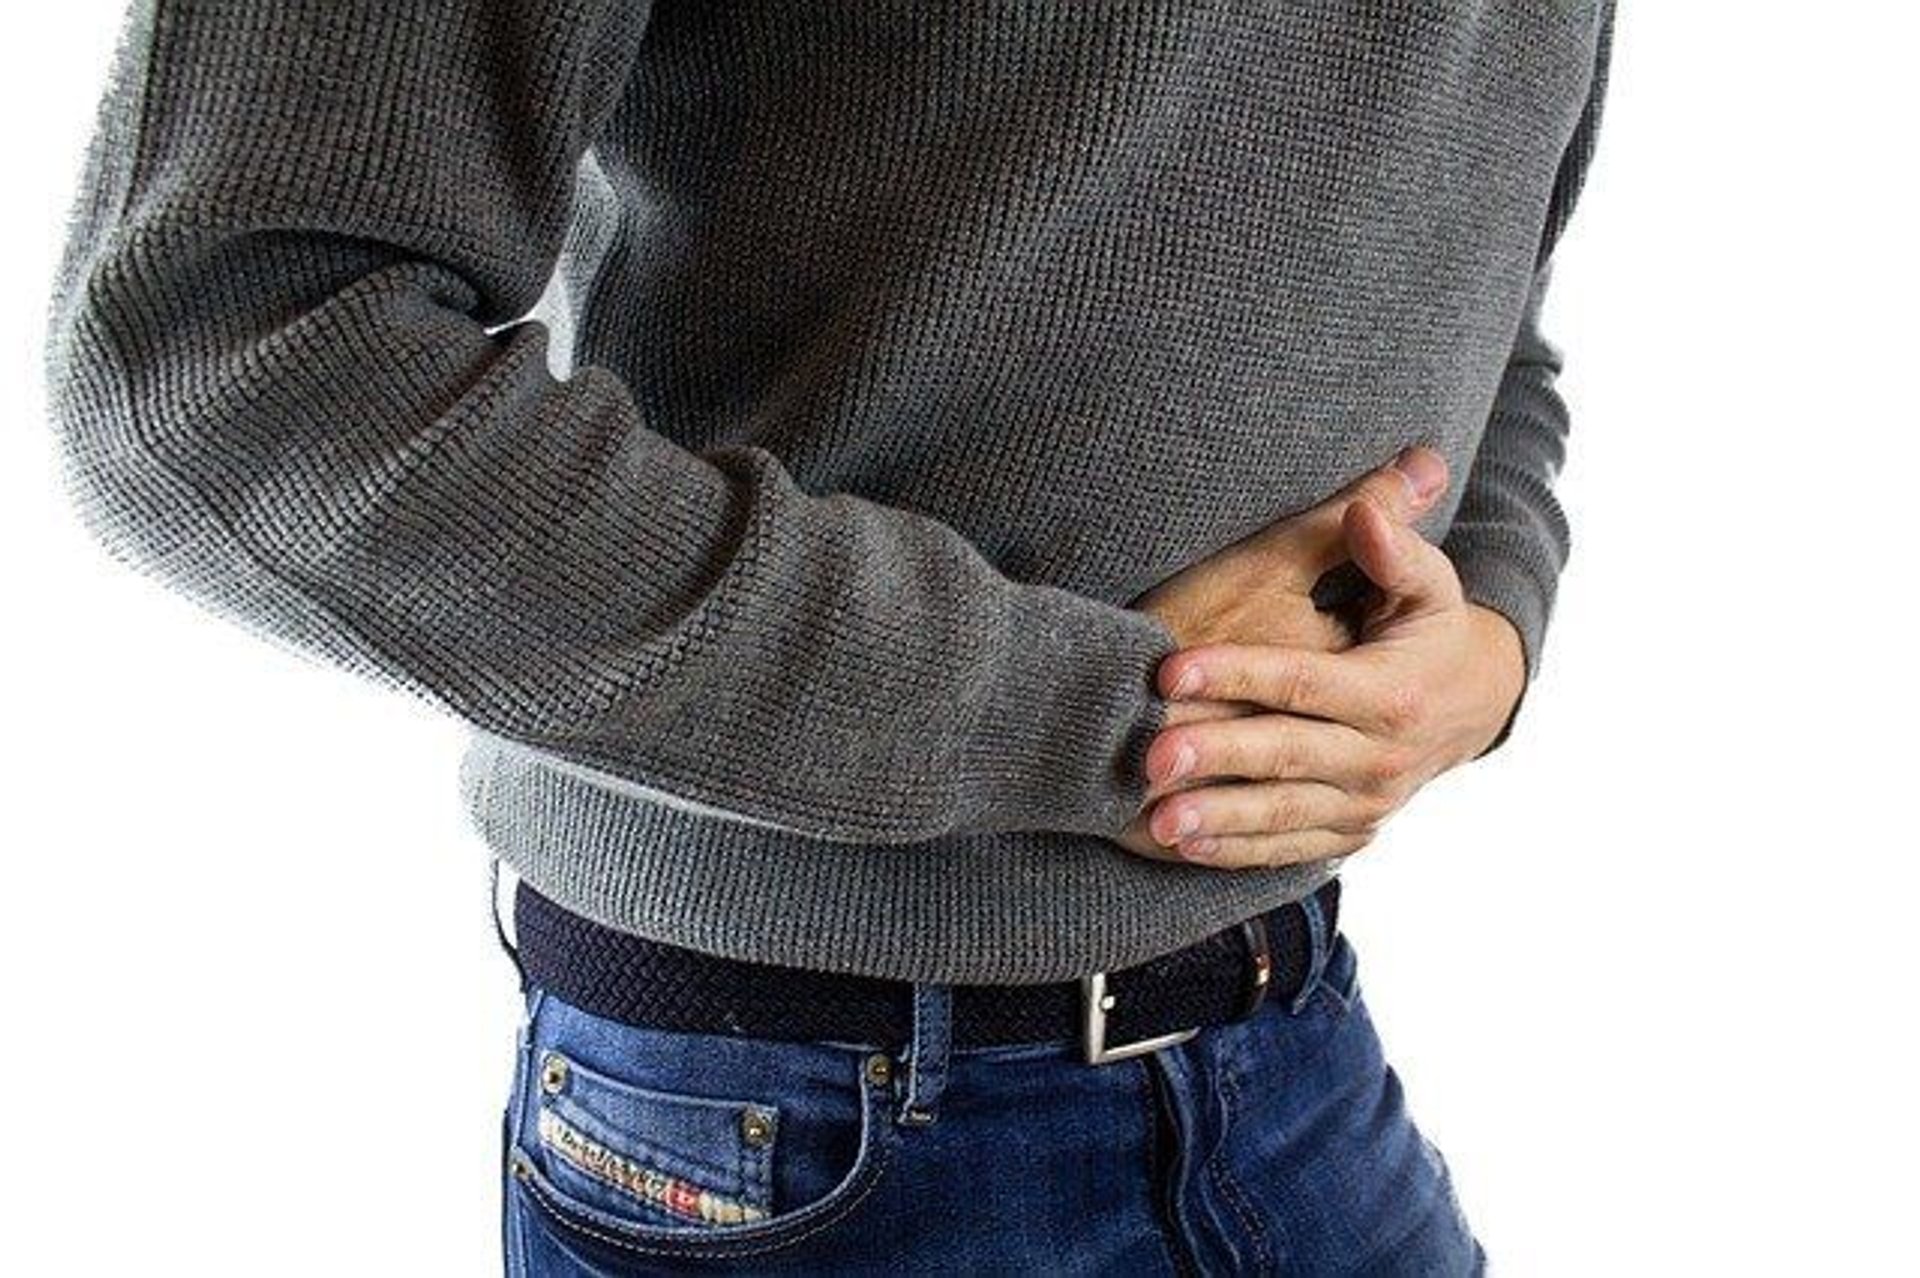 Zaburzenia czynnościowe żołądka i dwunastnicy – przyczyny, objawy, diagnostyka, leczenie